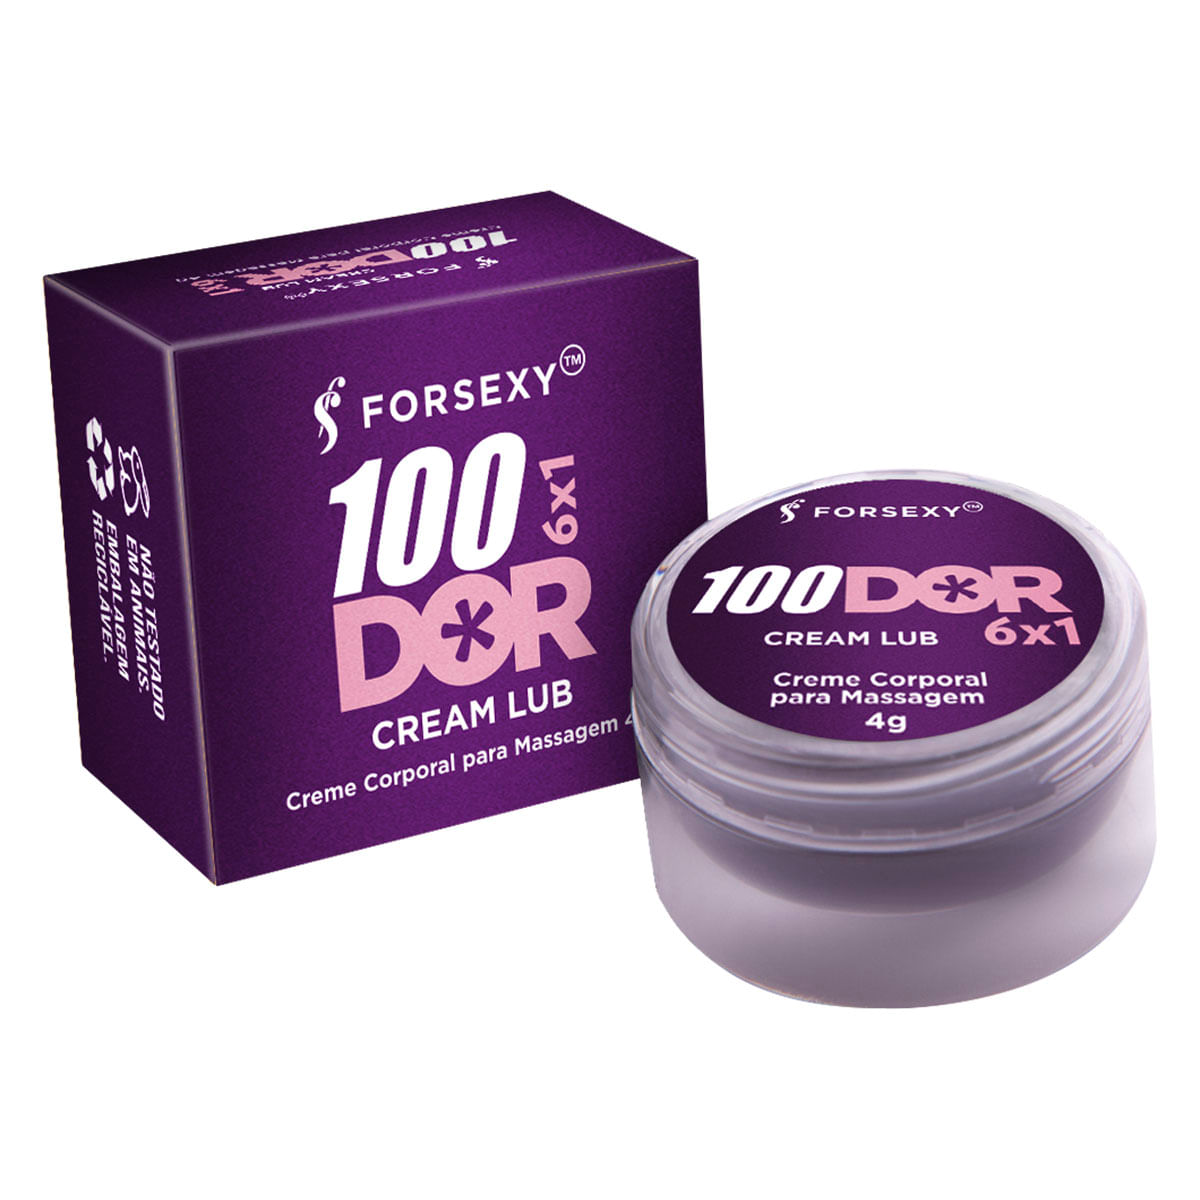 100DOR Dessensibilizante Esquenta Cream Lub 4g For Sexy